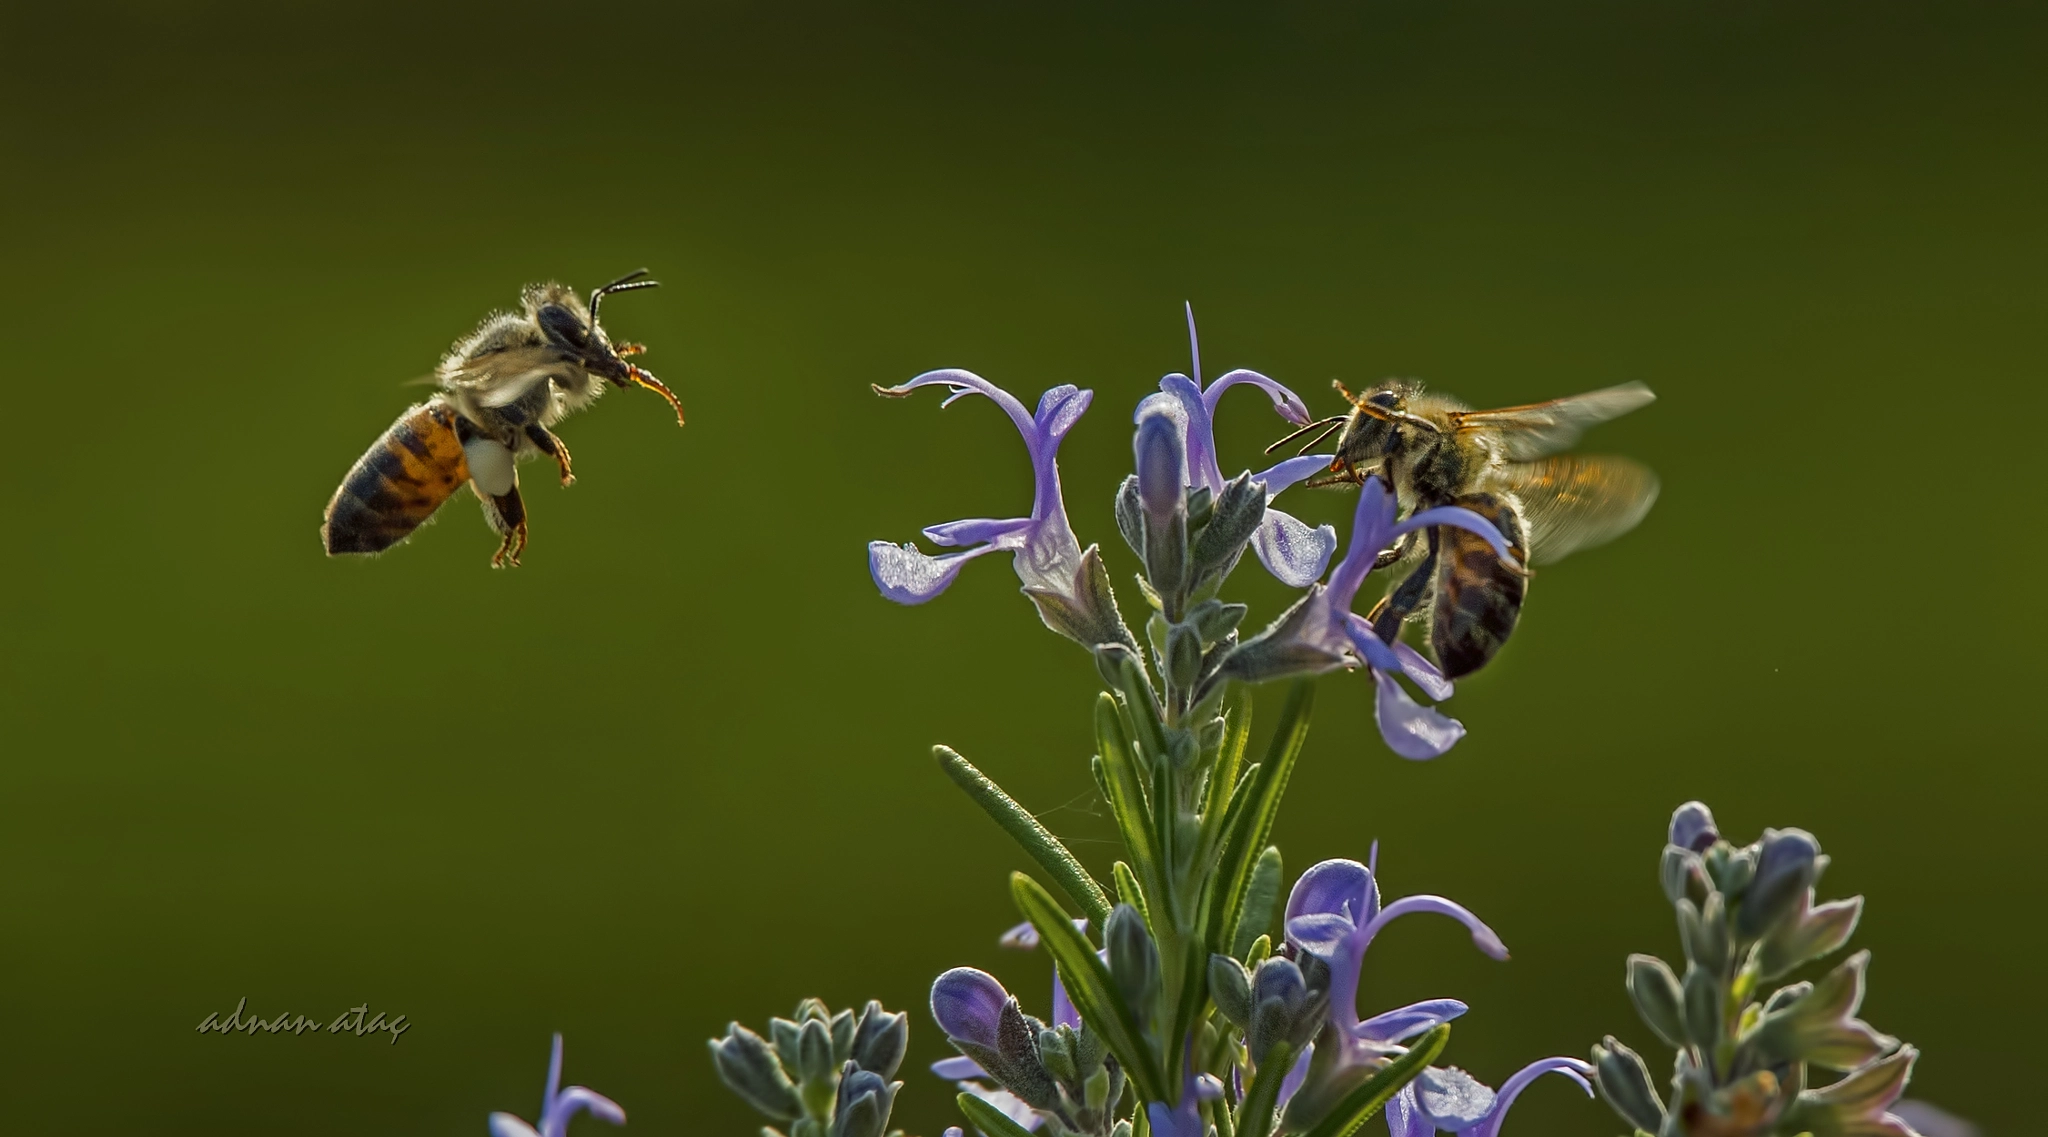 Nikon D4 sample photo. Bal arısı (apis mellifica) ve biberiye çiçeği (rosmarinus officinalis) photography